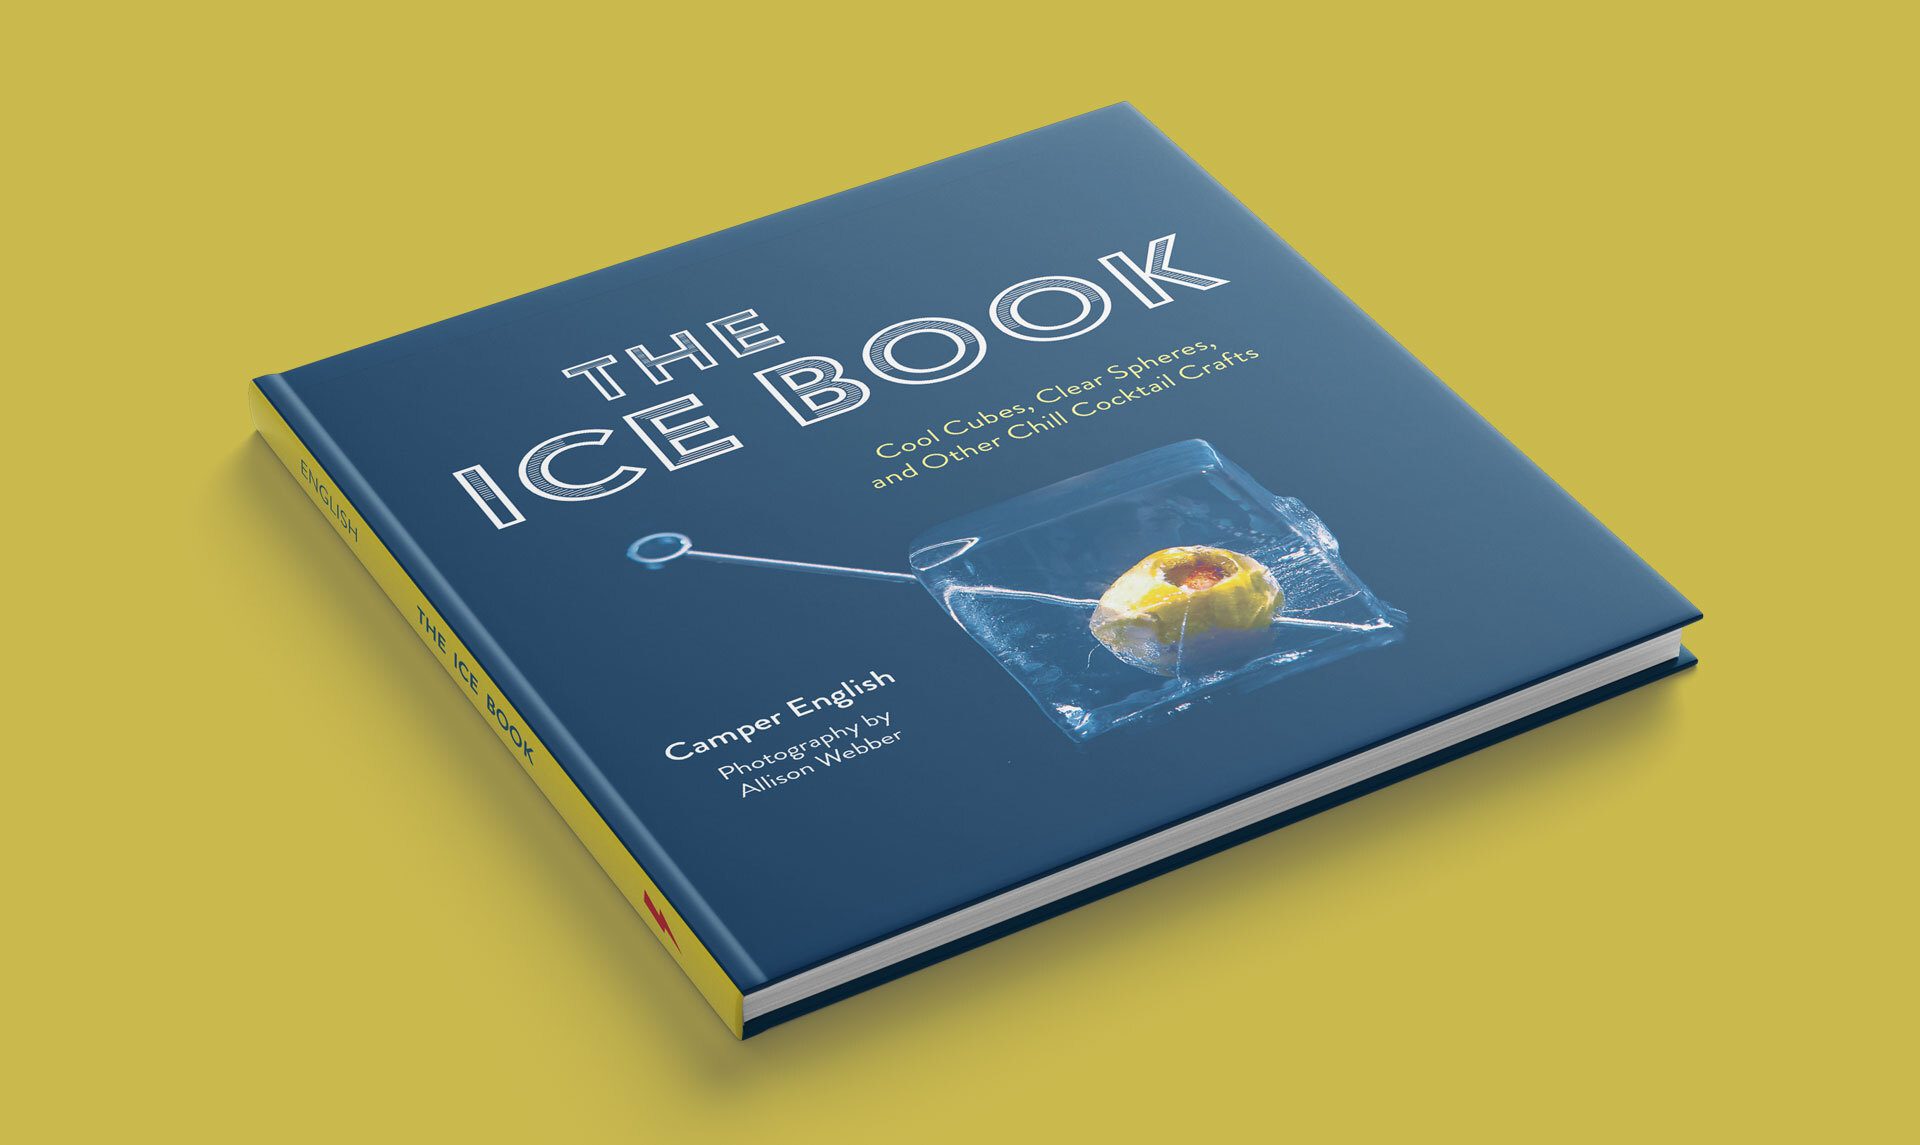 The Ice Book von Camper English erklärt in einfachen Schritten die Herstellung und Anwendung von Klareis